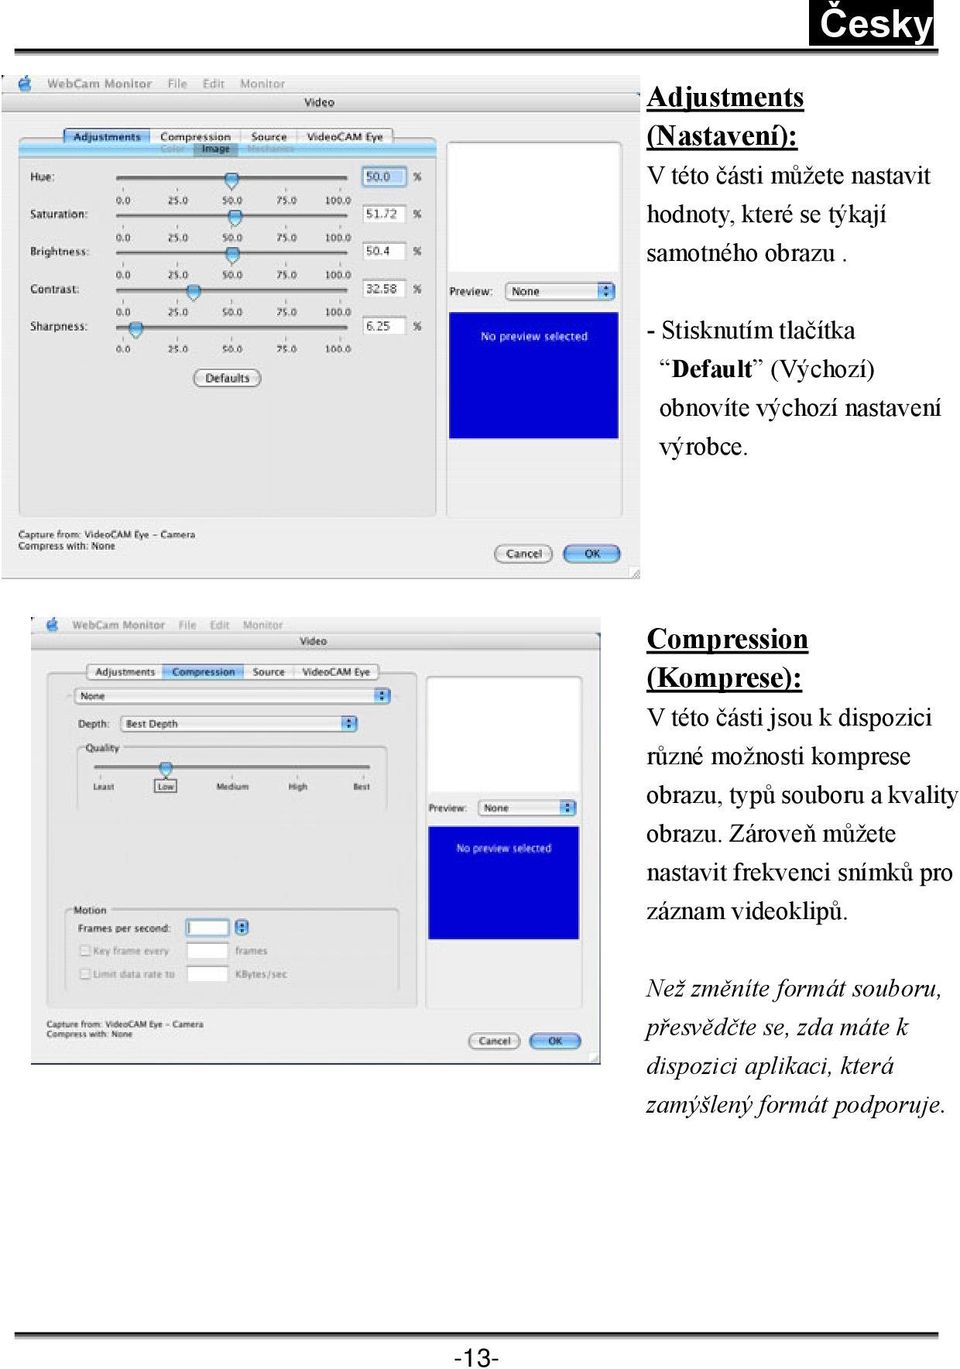 Compression (Komprese): V této části jsou k dispozici různé možnosti komprese obrazu, typů souboru a kvality obrazu.